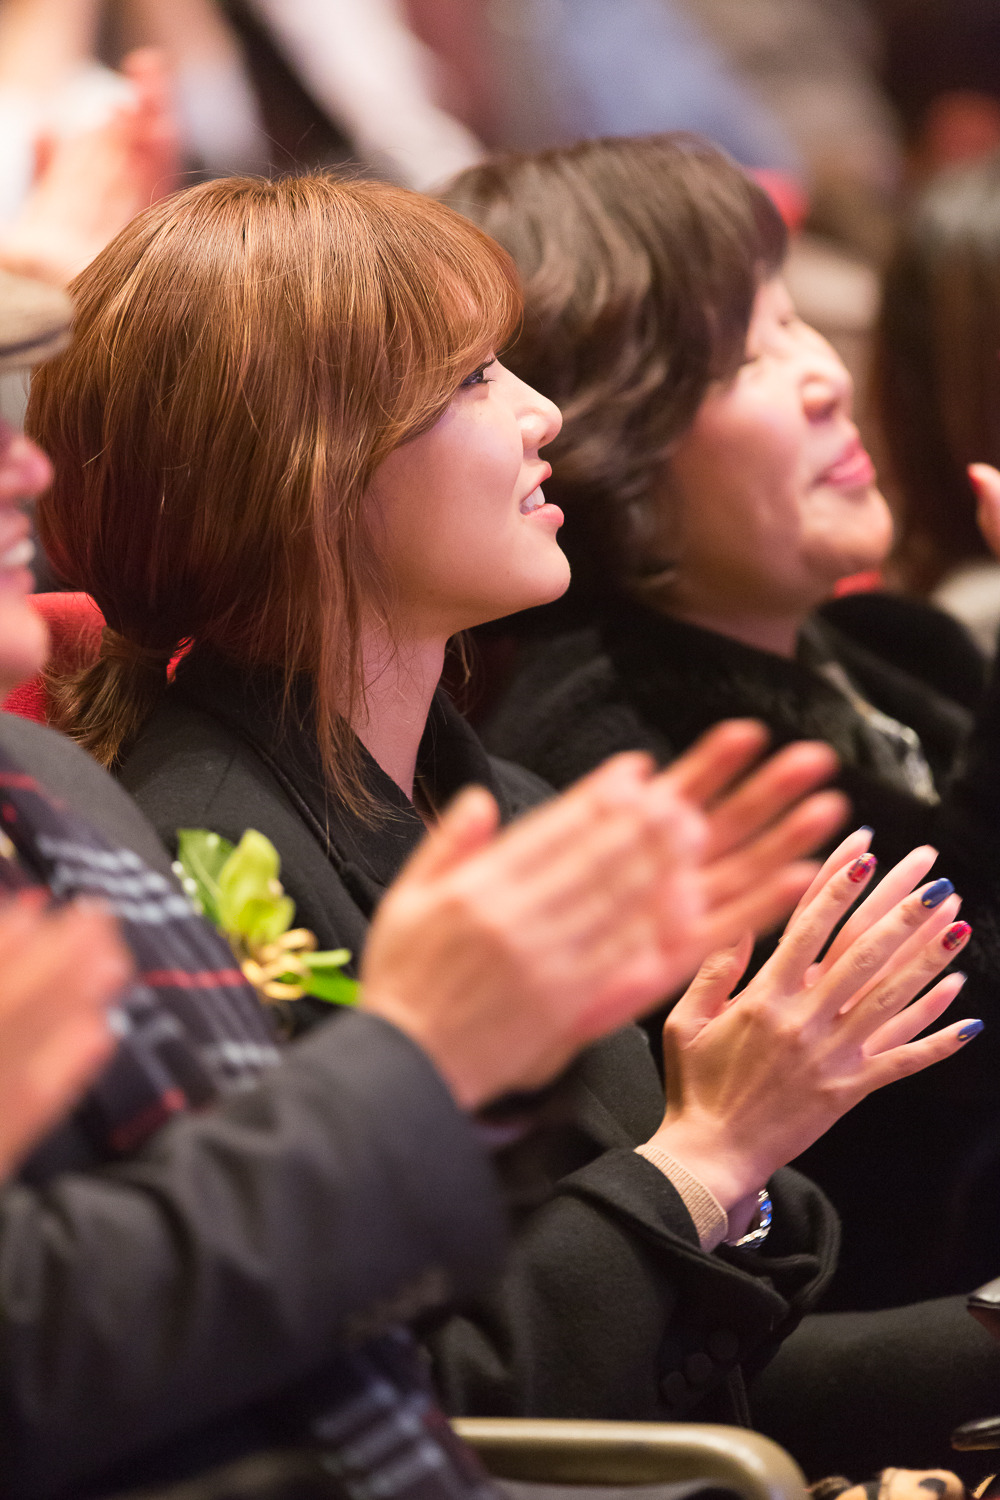 [PIC][20-12-014]SooYoung xuất hiện tại sự kiện "Korean Retinitis Pigmentosa Charity" vào chiều nay 2604835054B27AF61A0E10